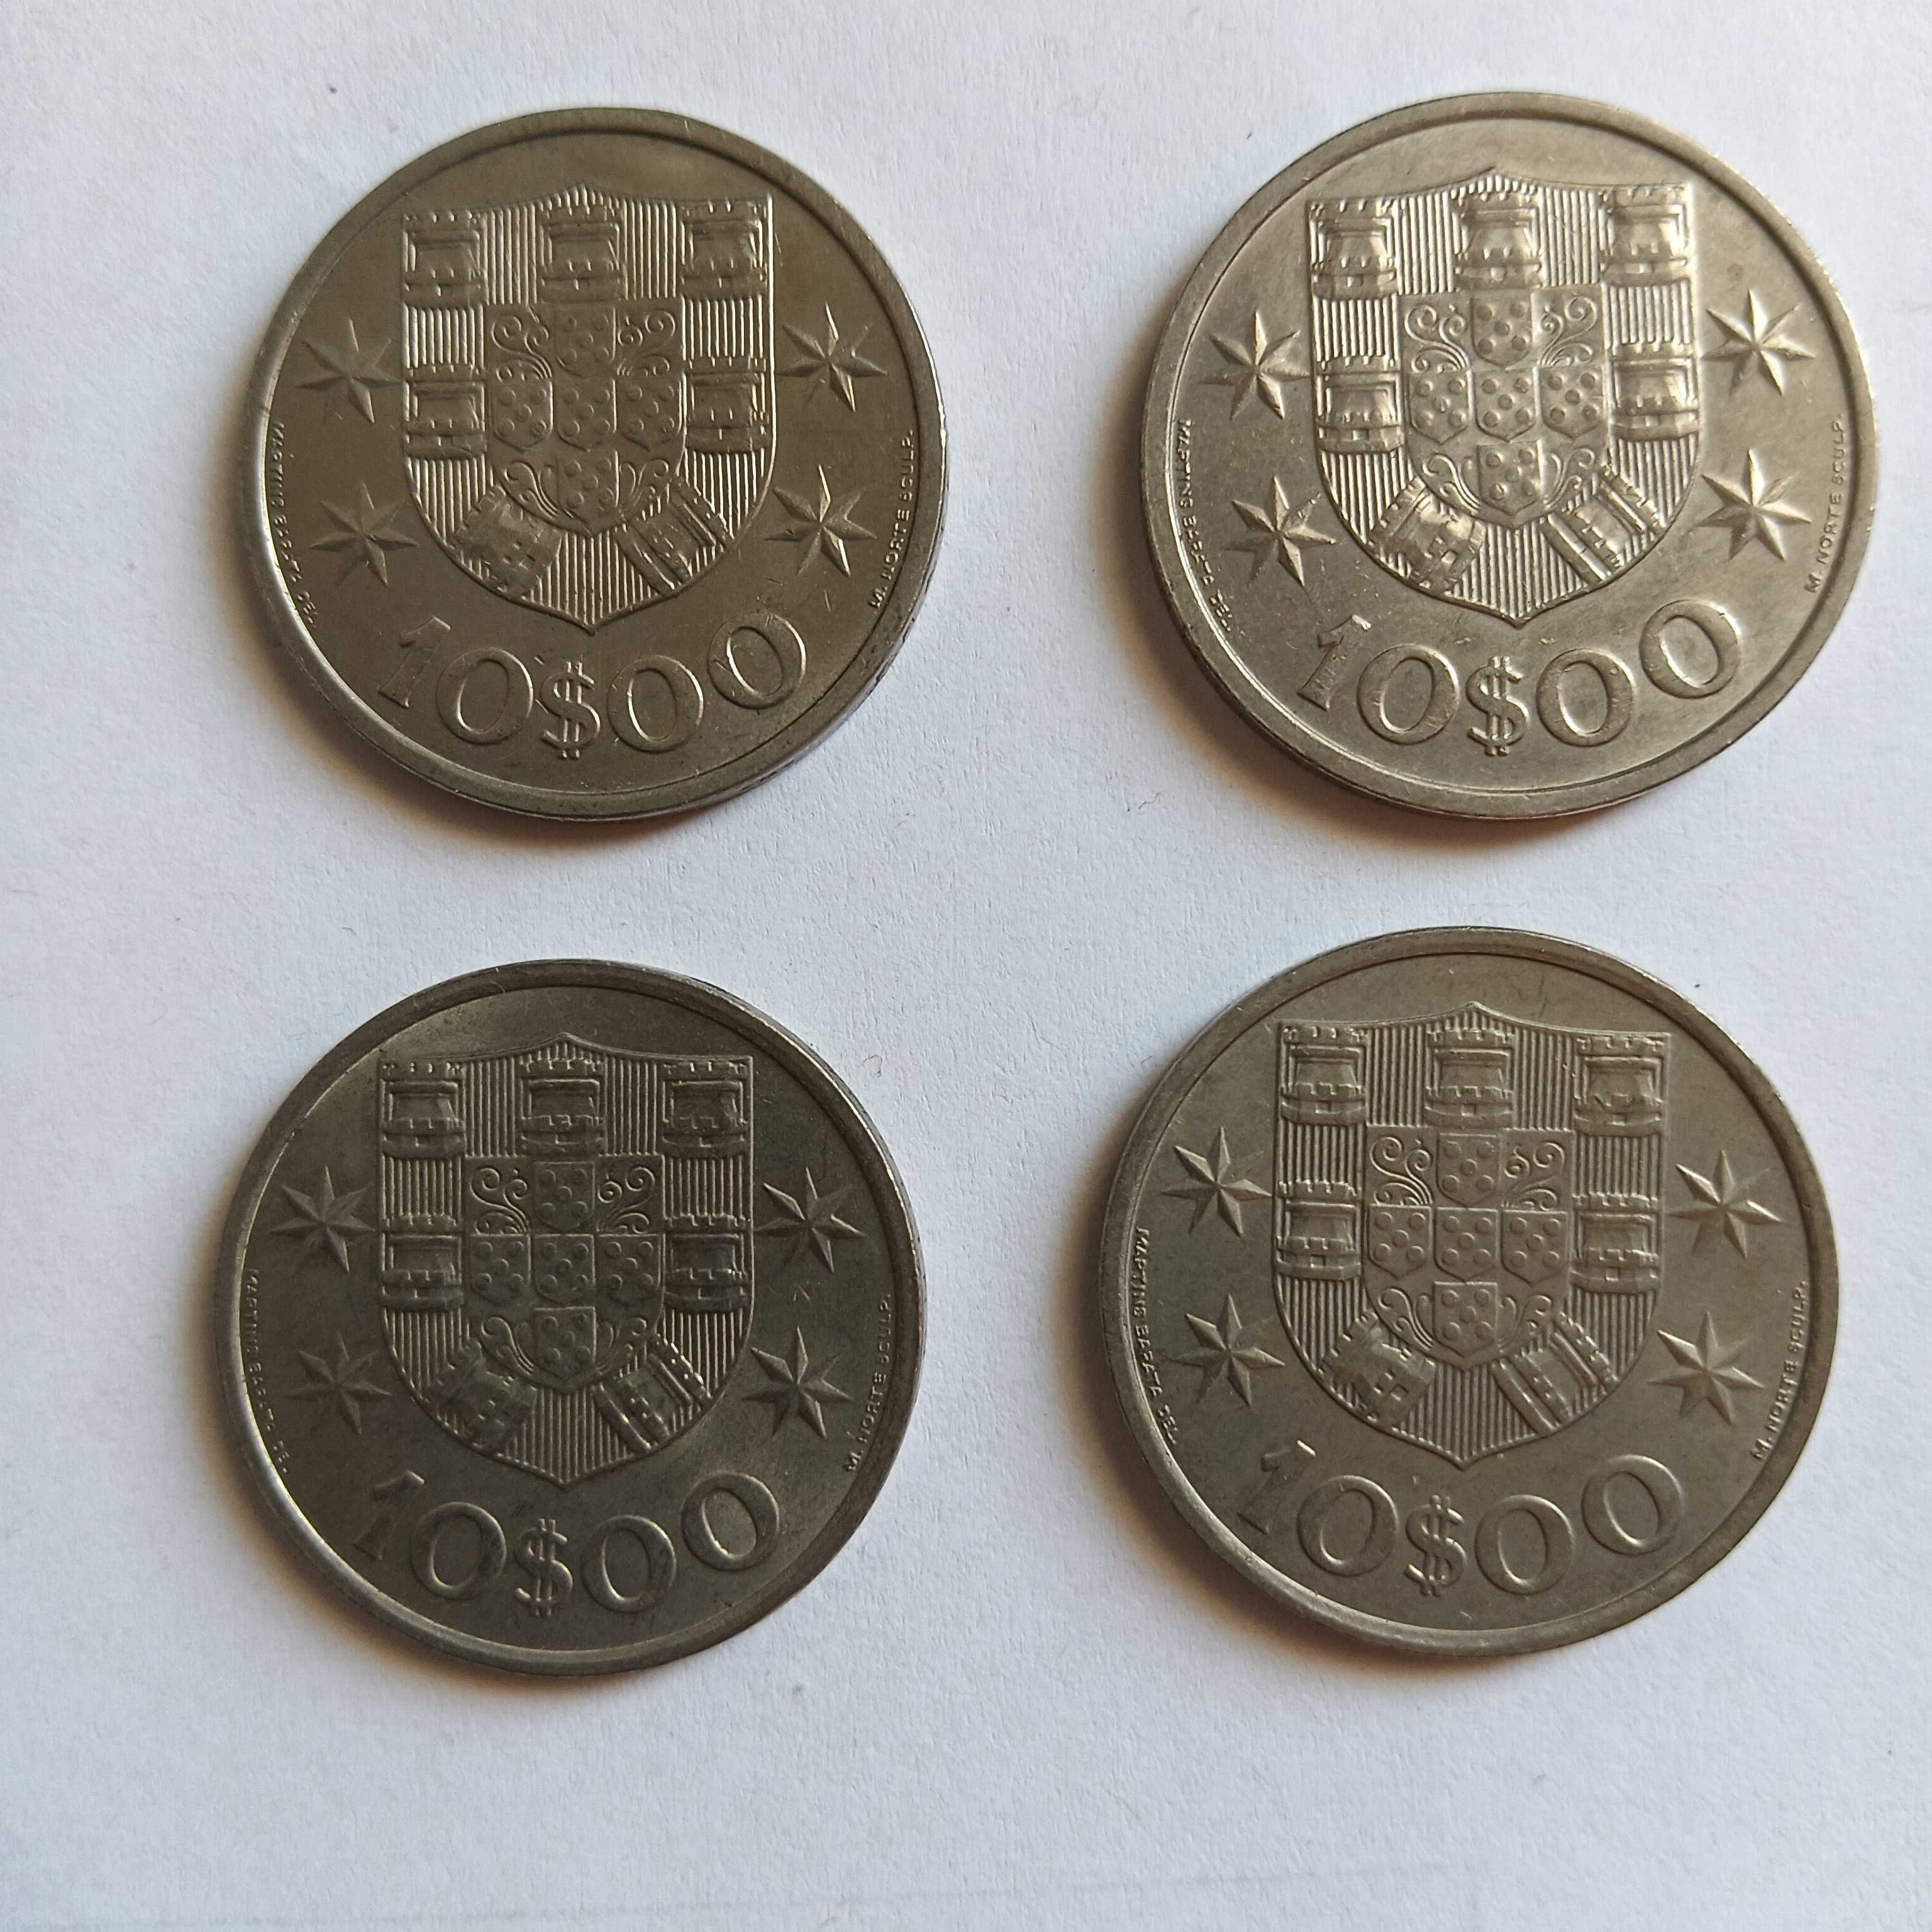 Moedas portuguesas – 4 moedas de 10$00 de 1971 a 1974 – Cupro-Níquel